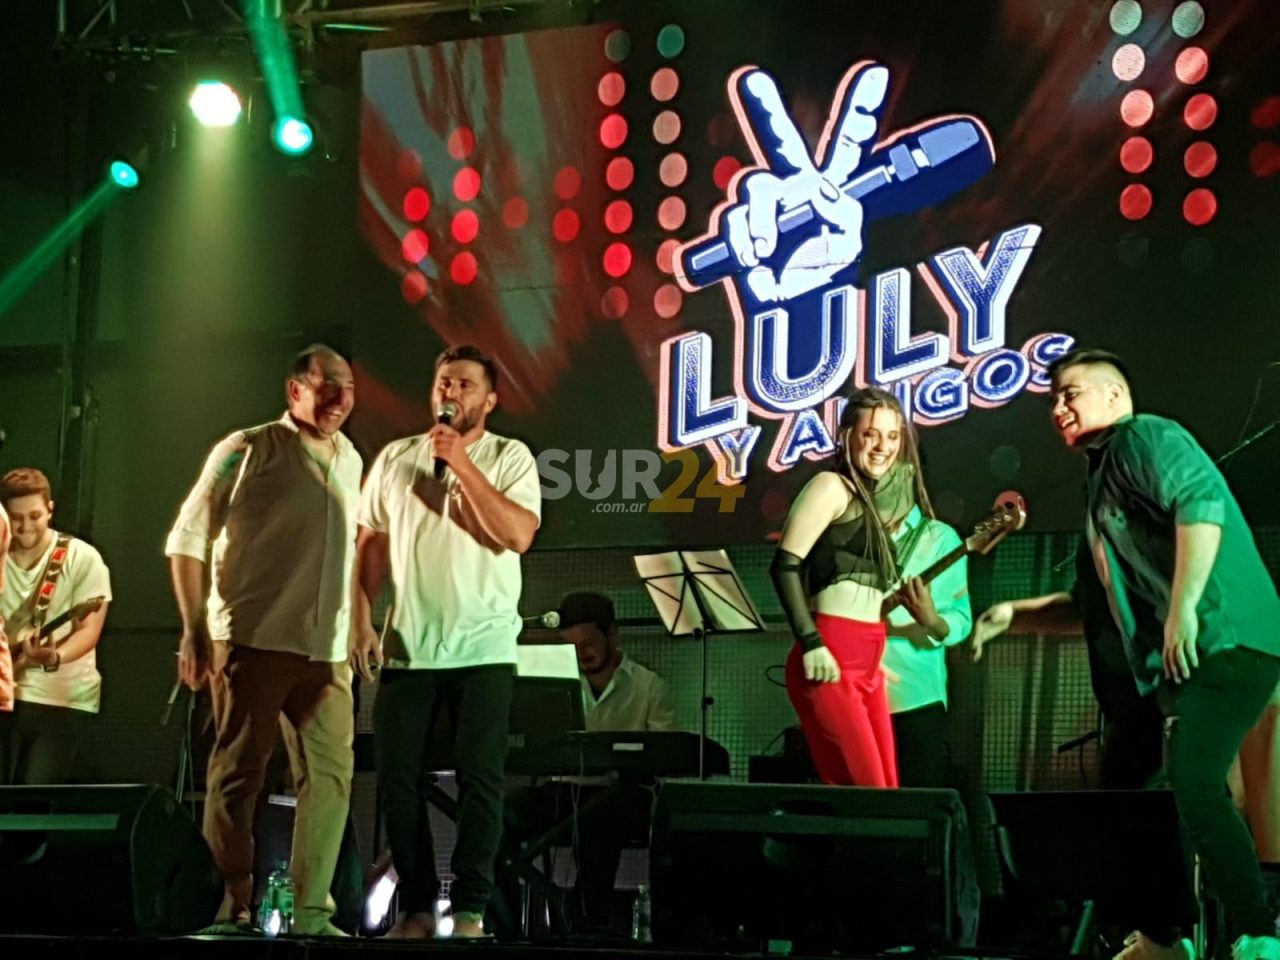 El Show Luly & Amigos hizo vibrar a todo Rufino